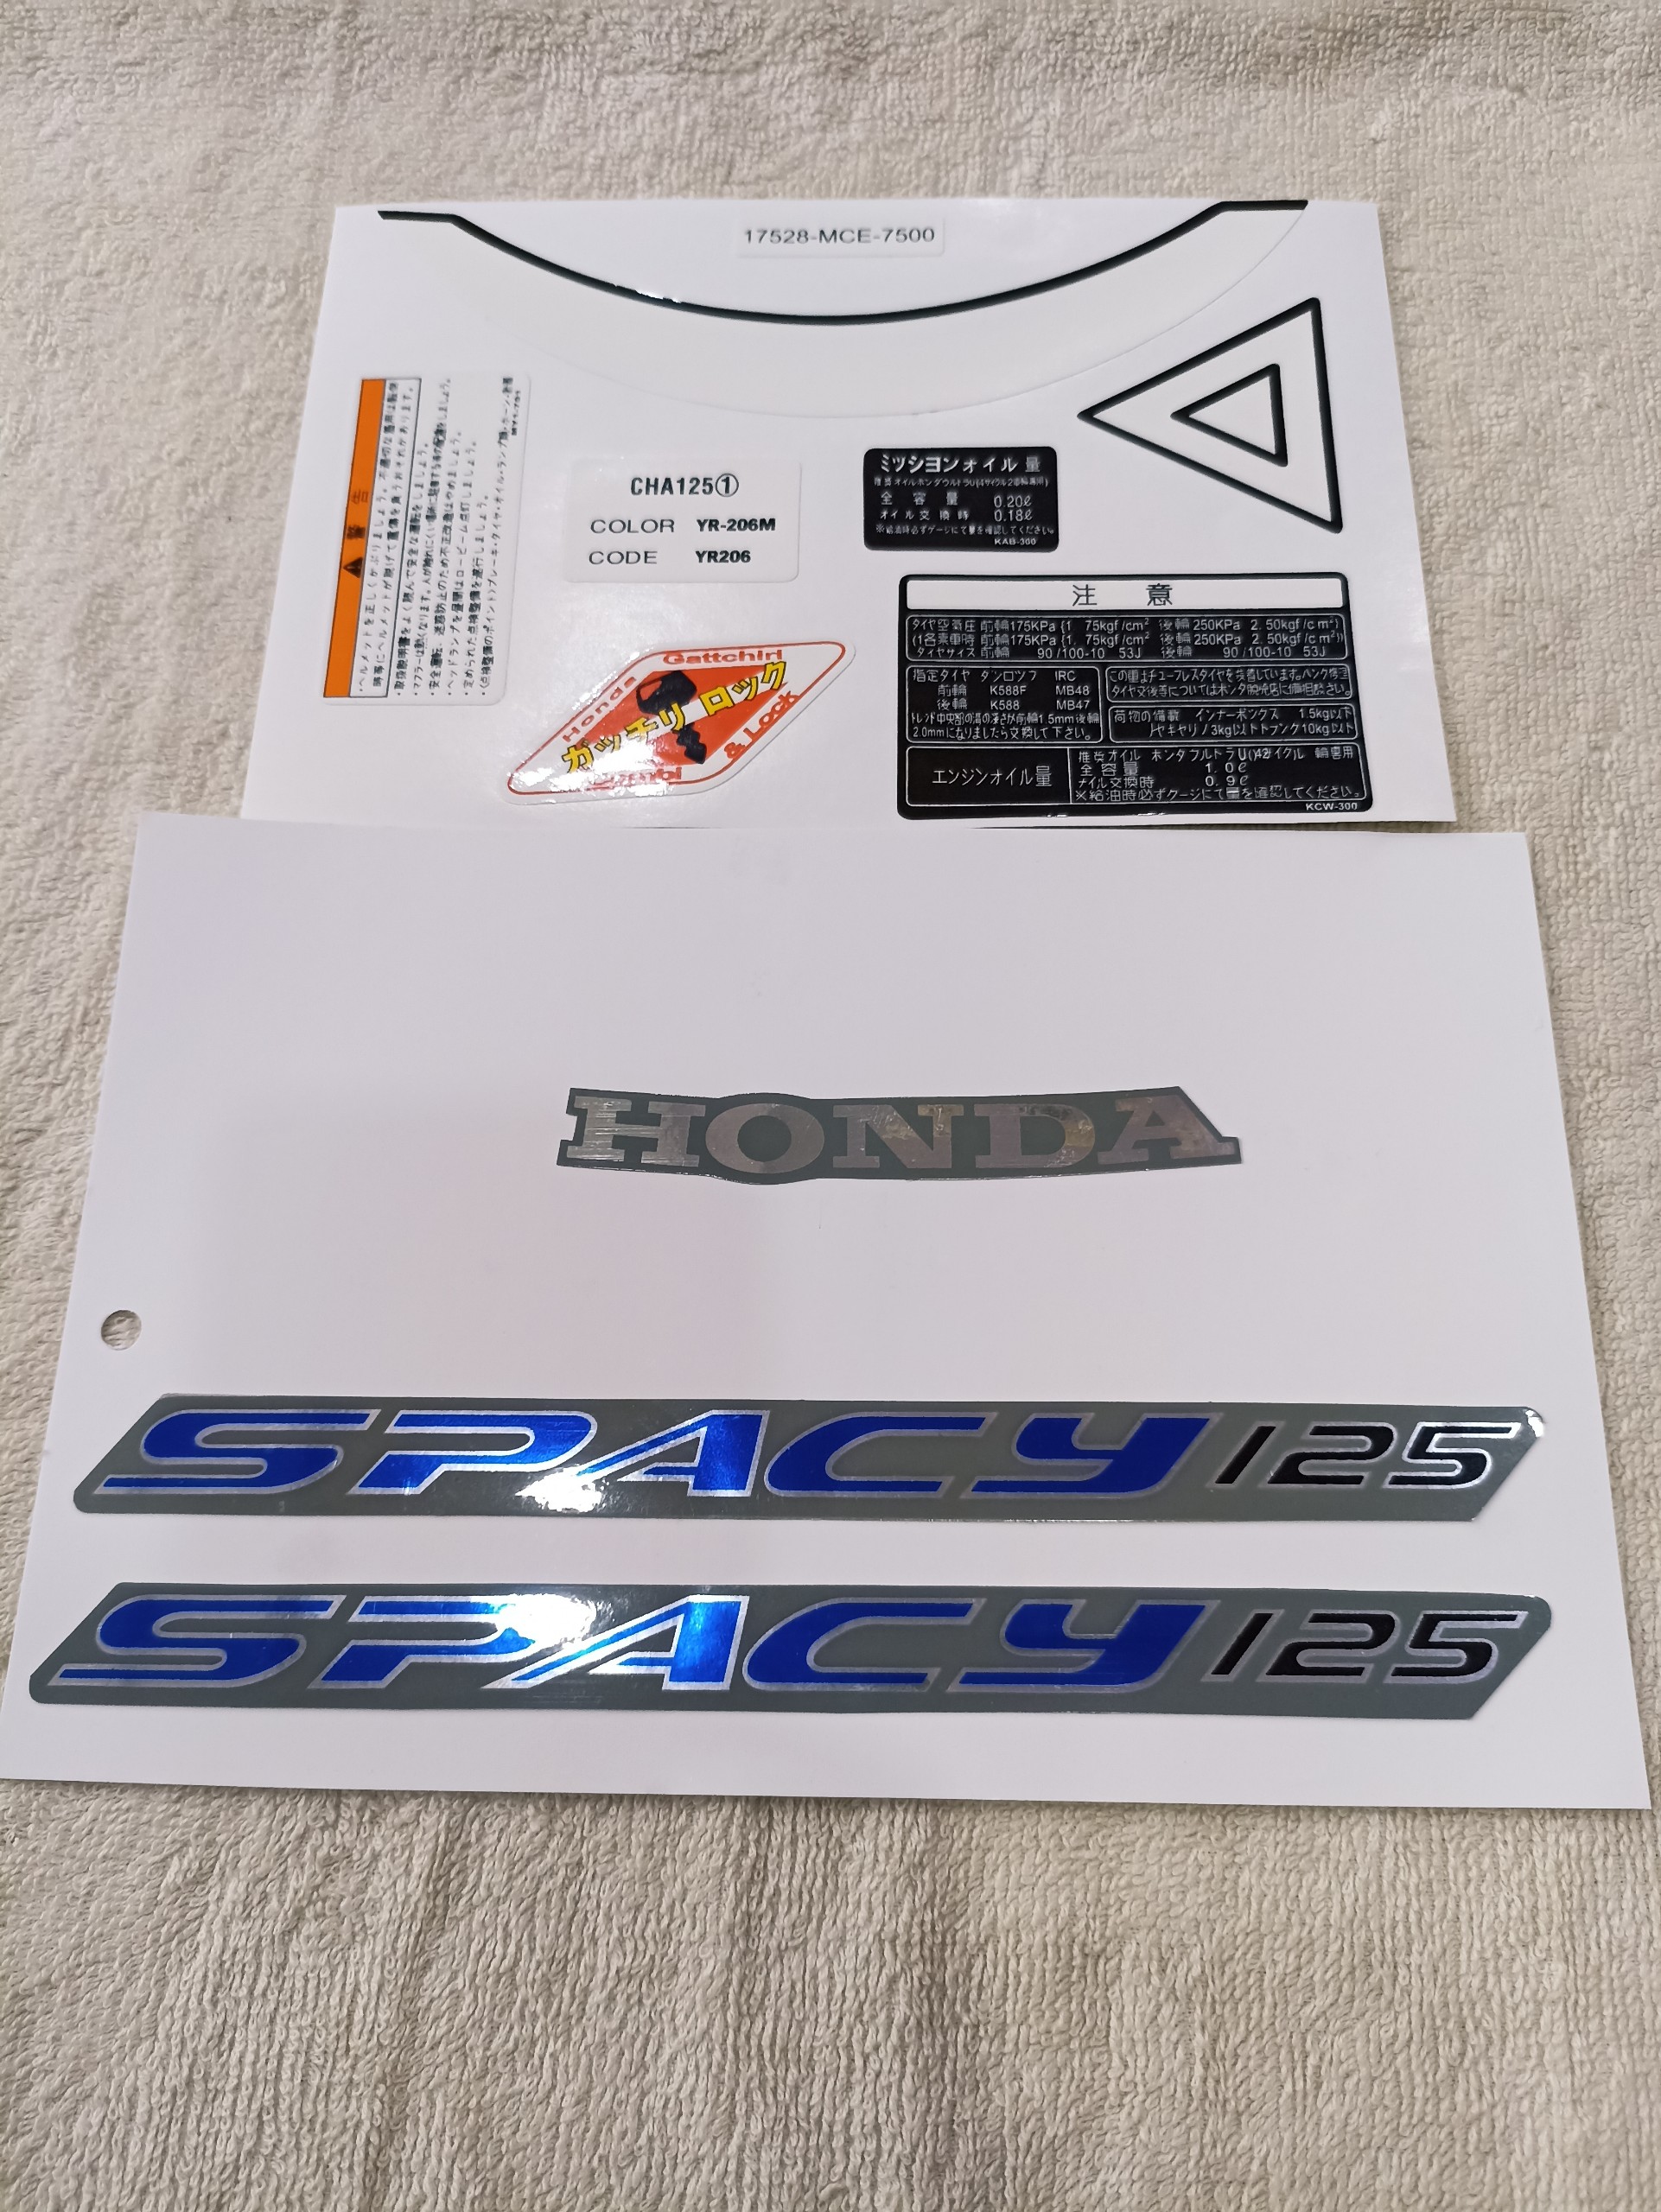 Bộ tem decal dán xe máy Honda spacy 125 màu xanh dương kèm thông số zin thái siêu đẹp